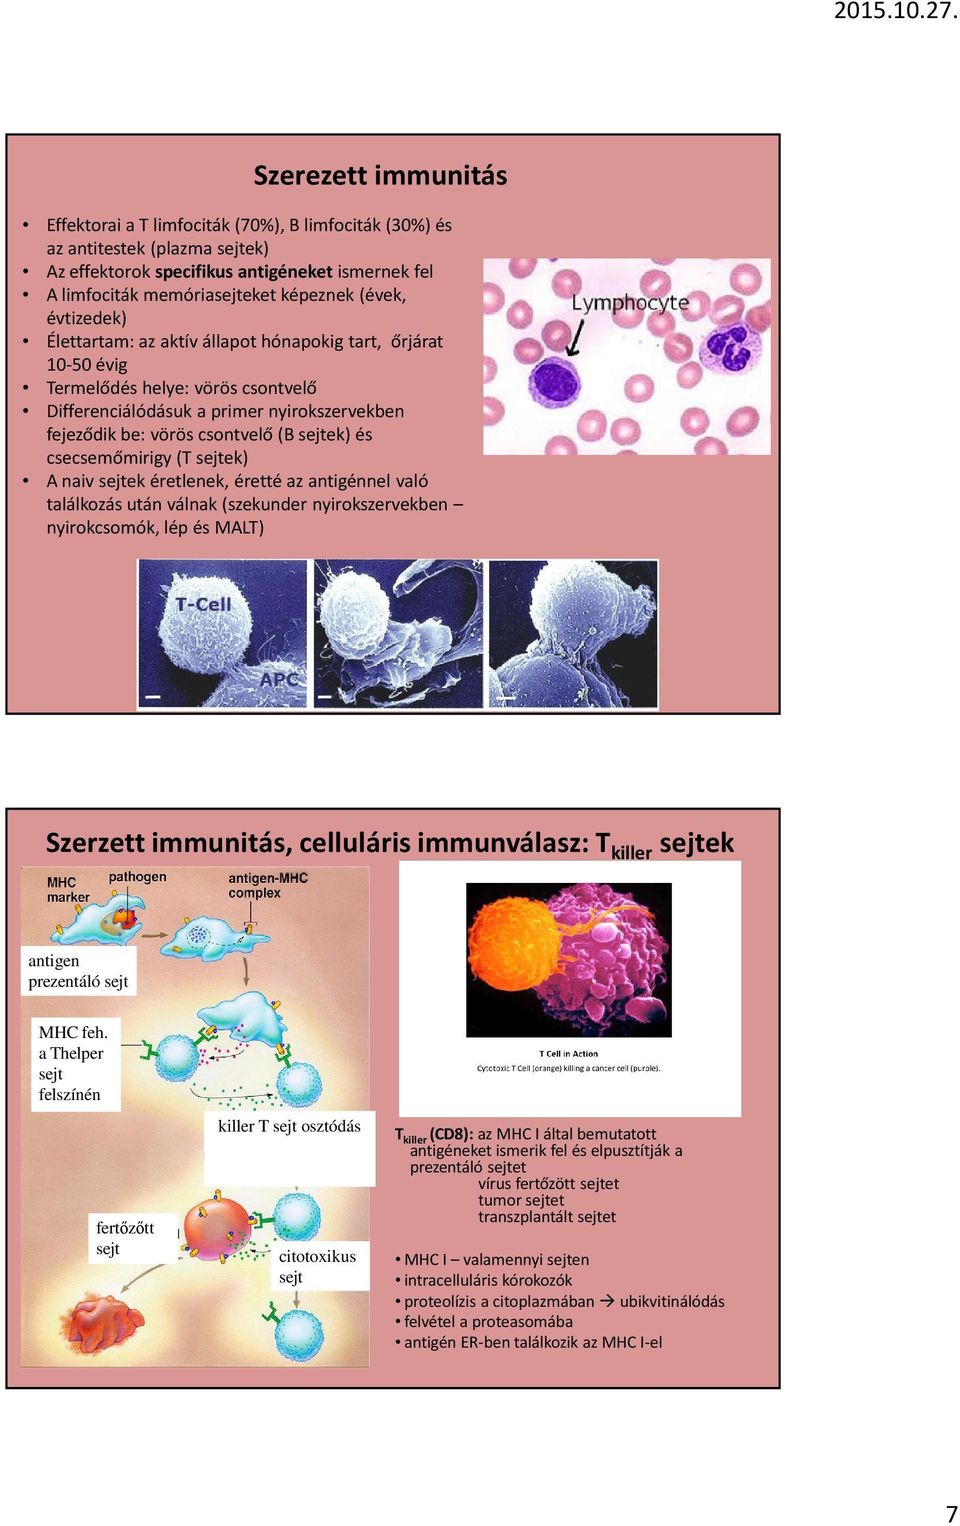 csecsemőmirigy (T sejtek) A naiv sejtek éretlenek, éretté az antigénnel való találkozás után válnak (szekunder nyirokszervekben nyirokcsomók, lép és MALT) Szerzett immunitás, celluláris immunválasz: